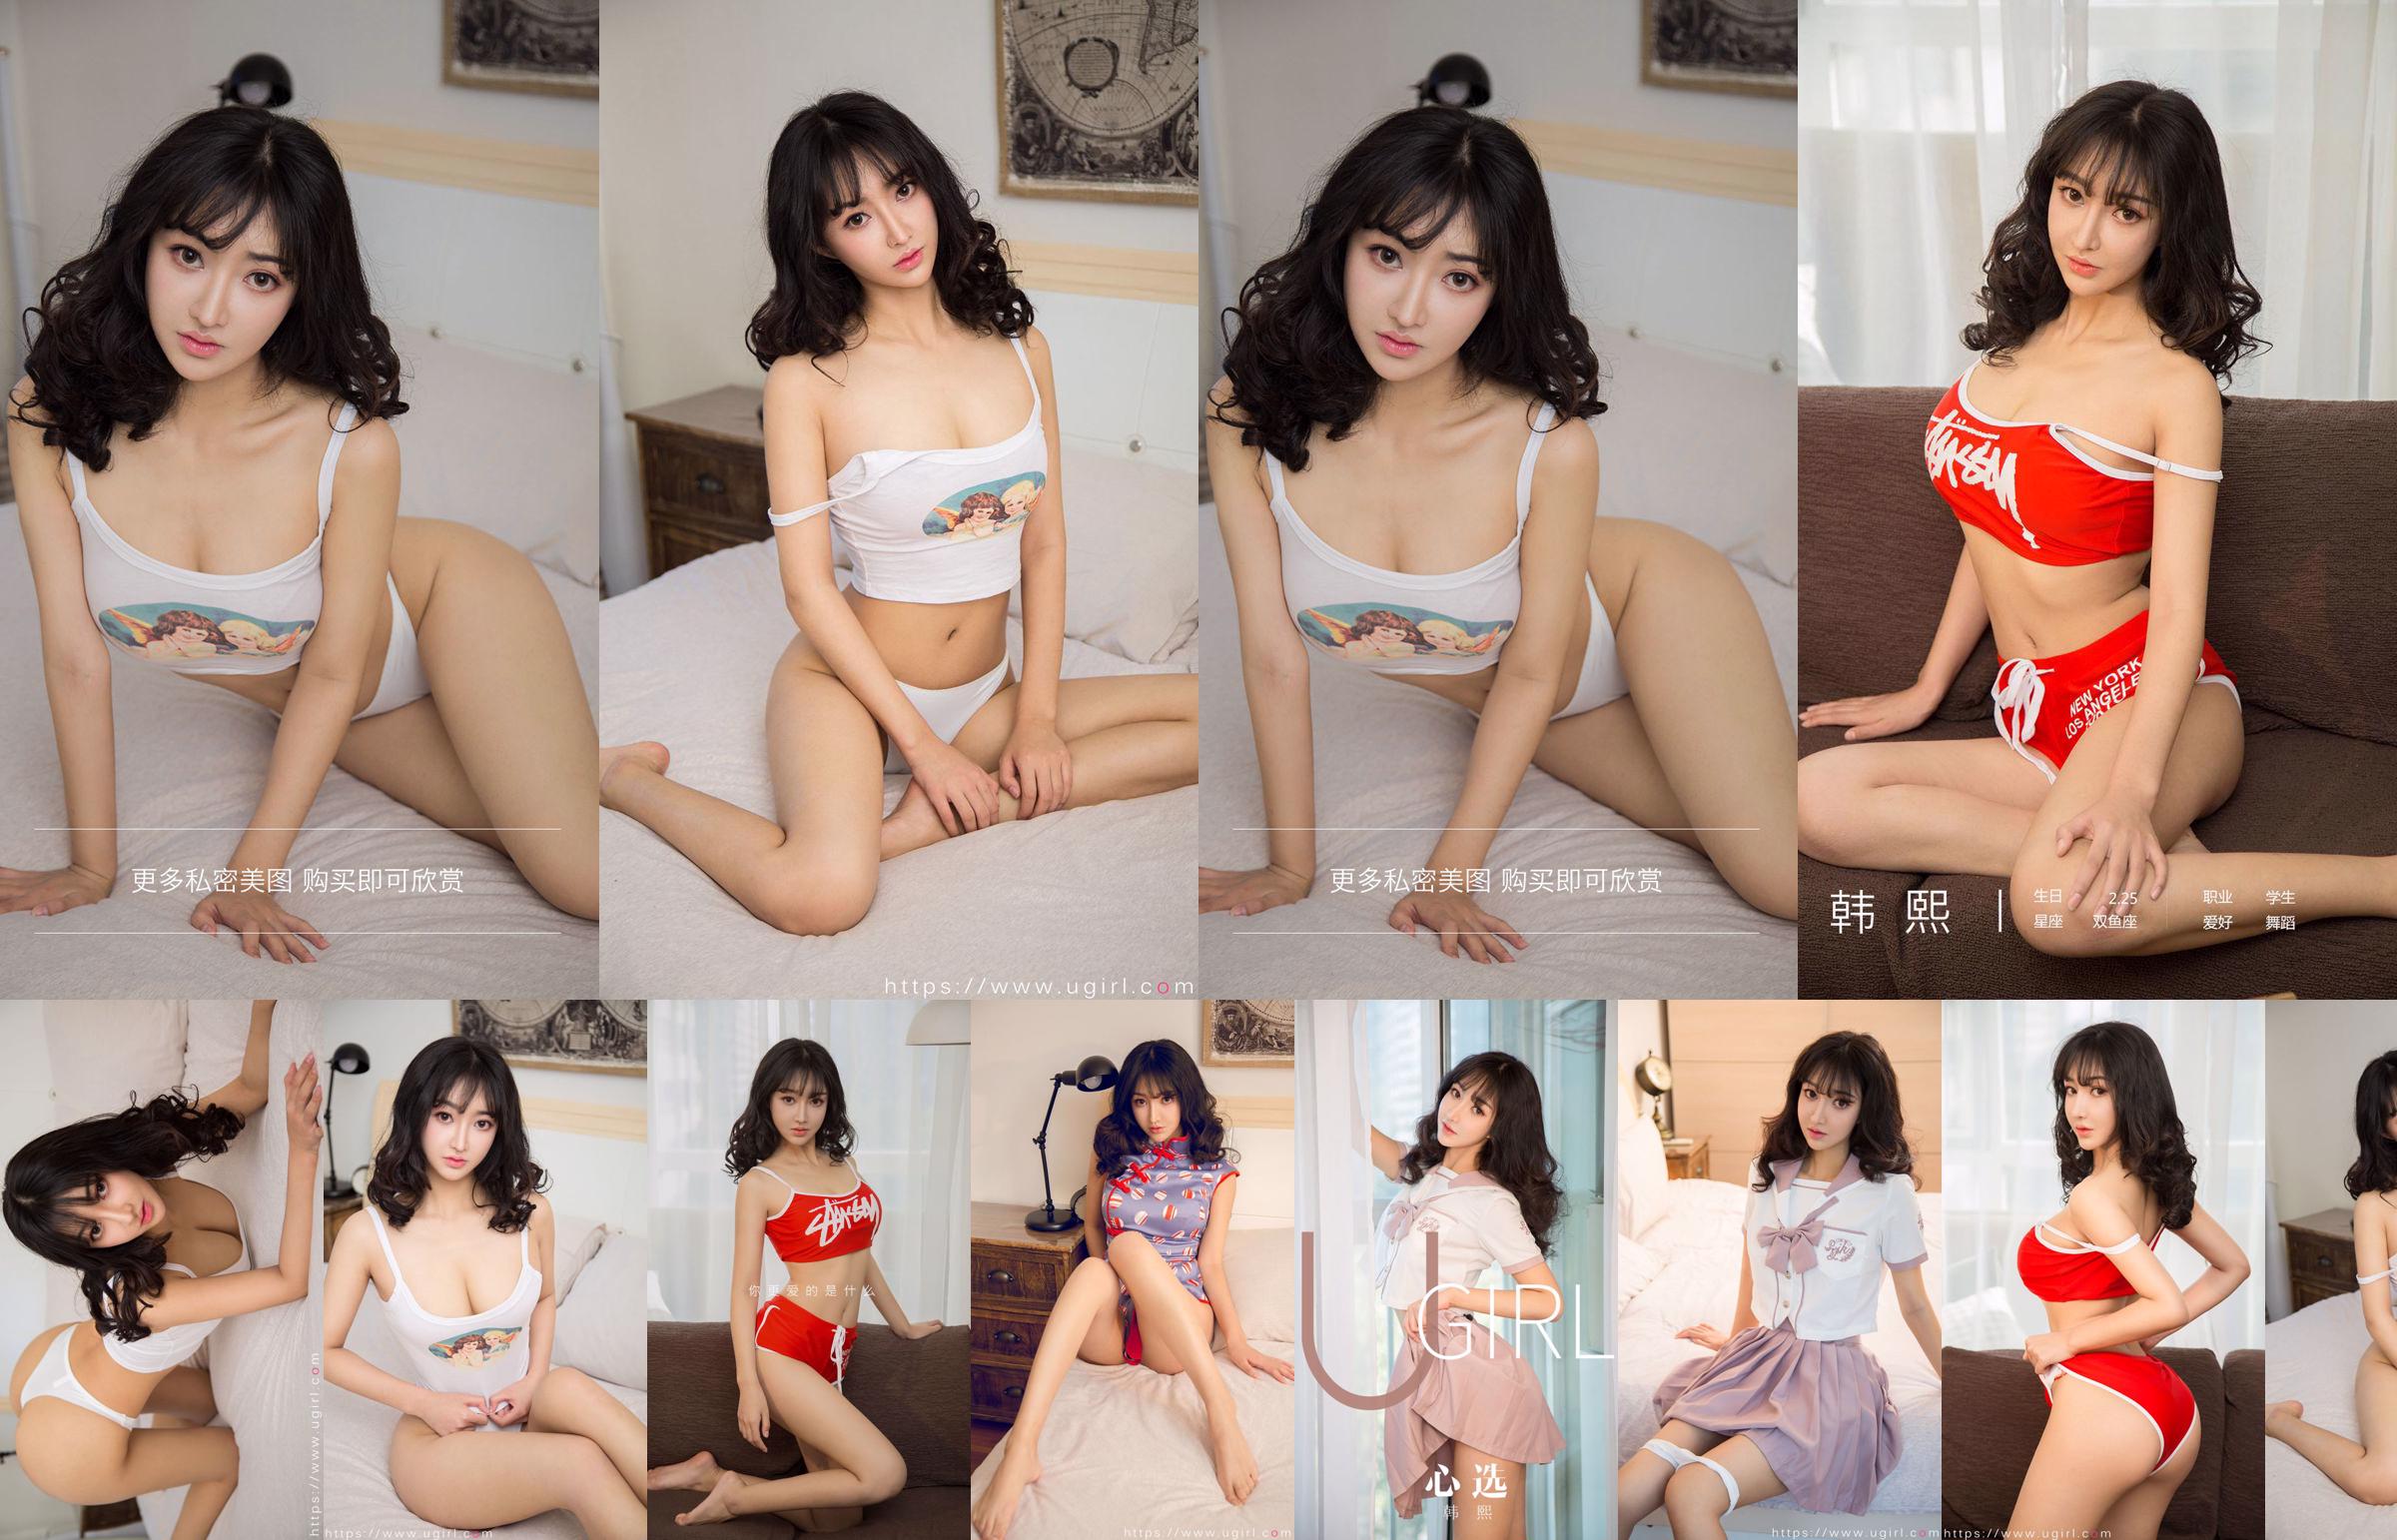 [Home Delivery WordGirls] No.812 Xi Shui Shui Schönes Mädchen Auszubildender No.d62cf4 Seite 3